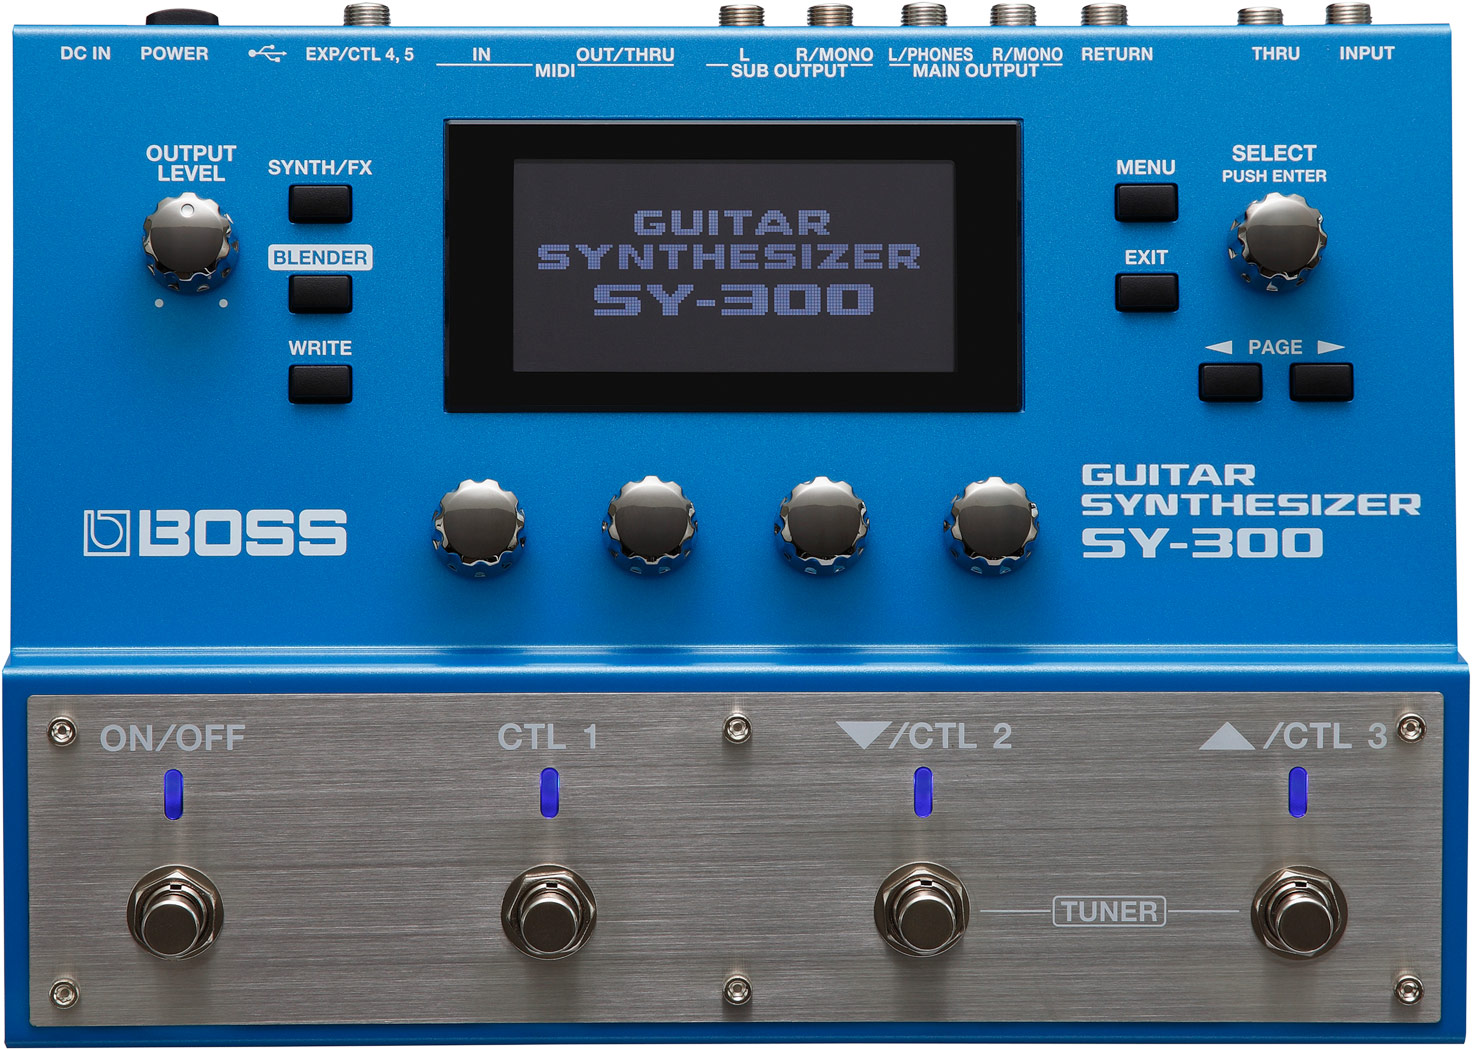 BOSS SY-300 ギターシンセサイザー